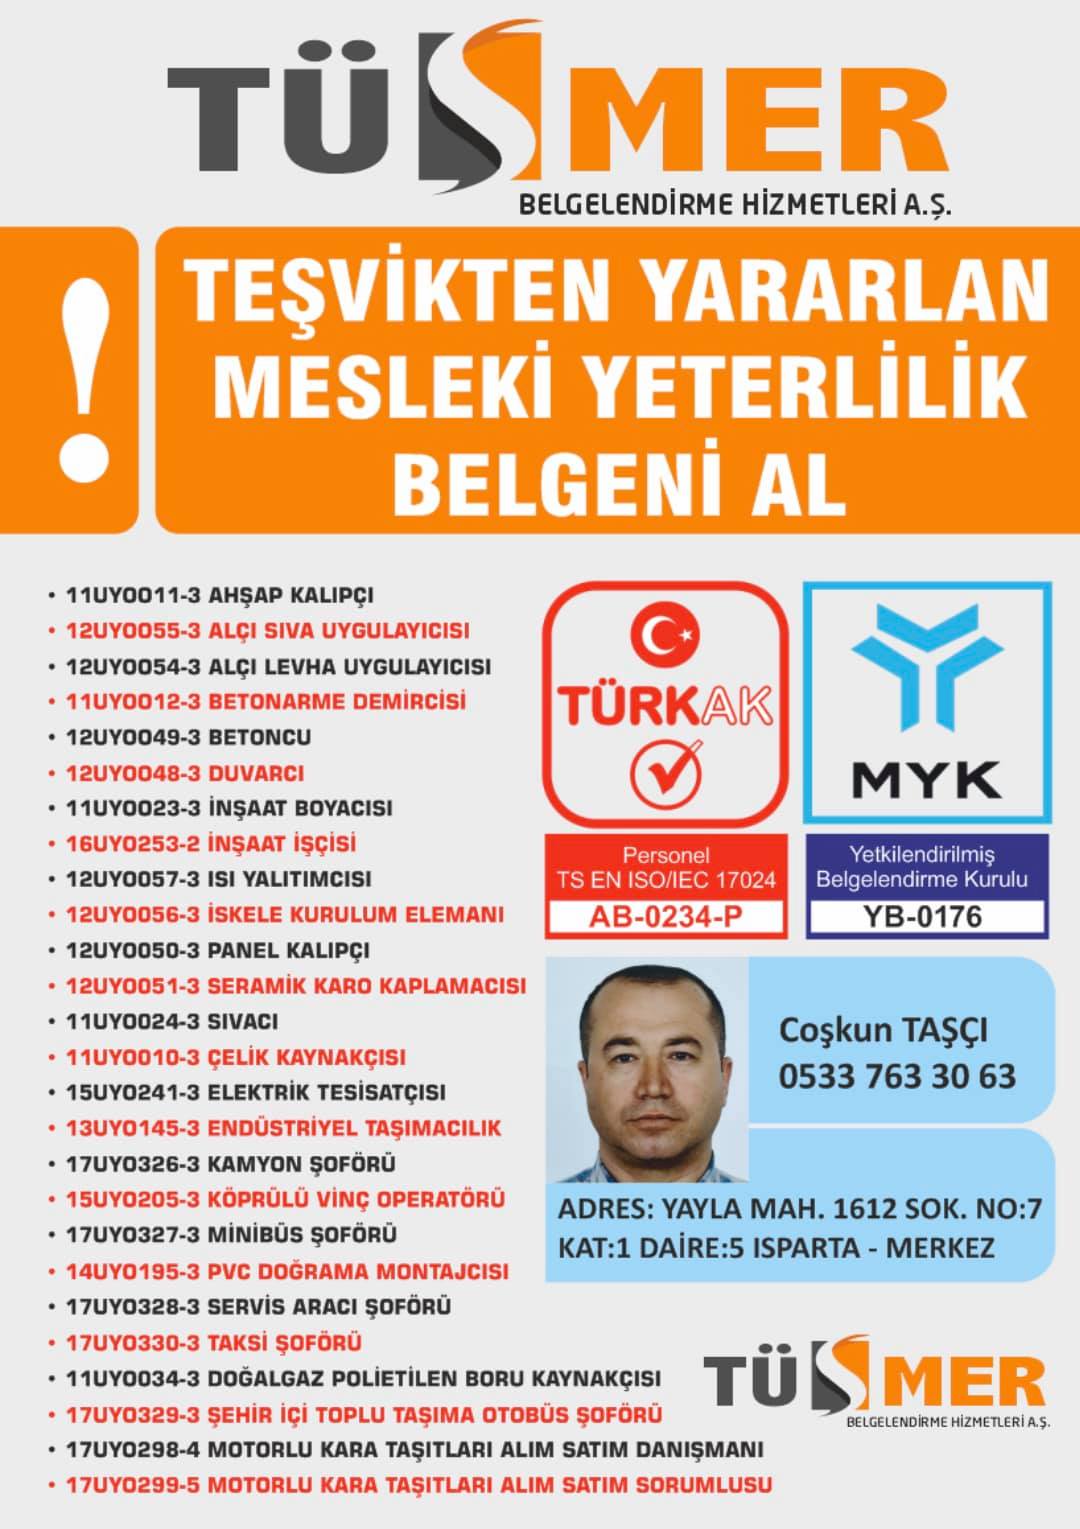 MYK MESLEKİ YETERLİLİK BELGESİ Tuna Esenler İstanbul